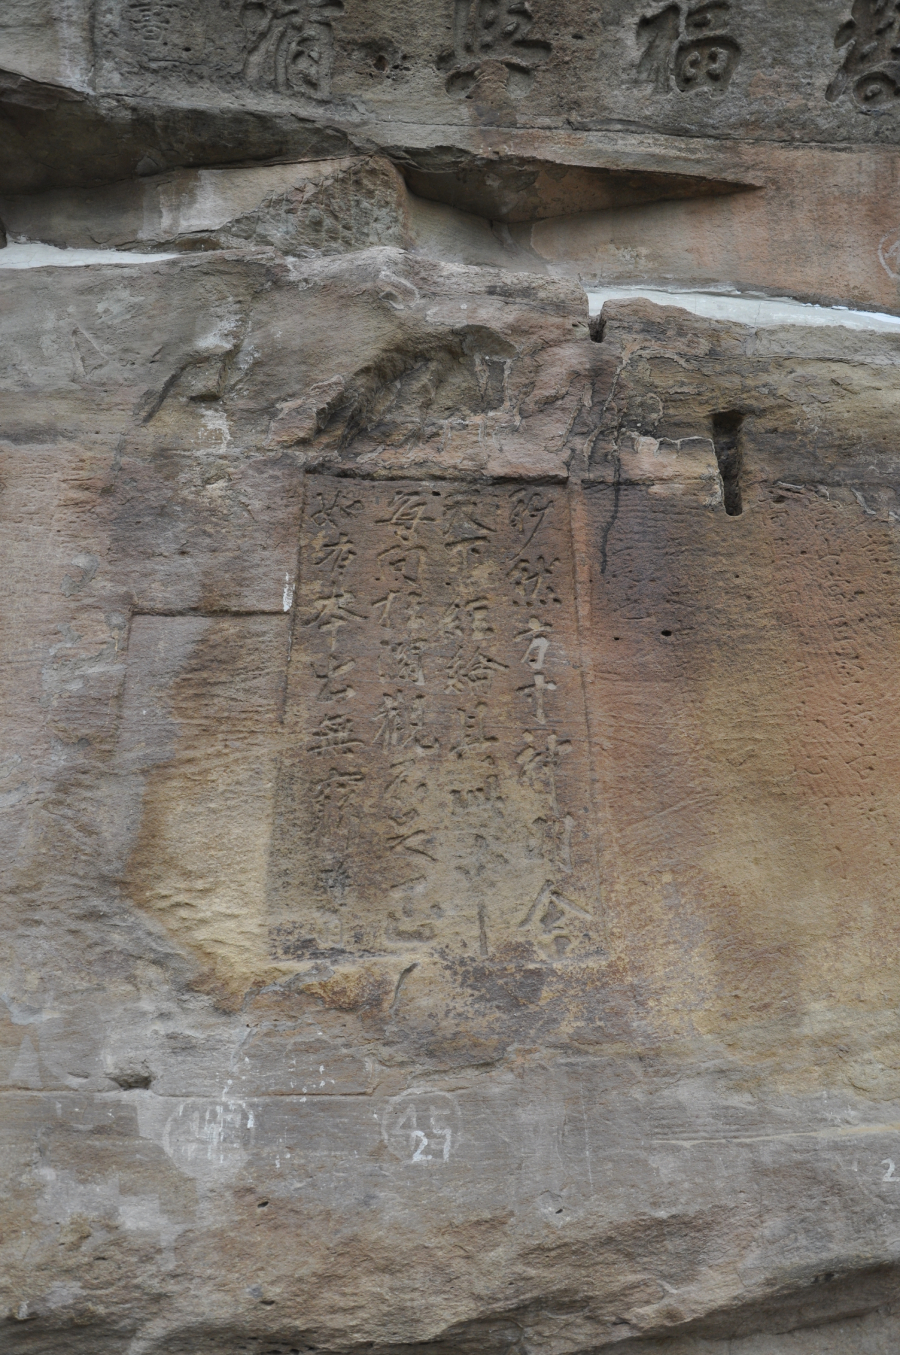 图为朱熹称颂程颐的《北岩题壁》（存于涪陵北岩石壁）。